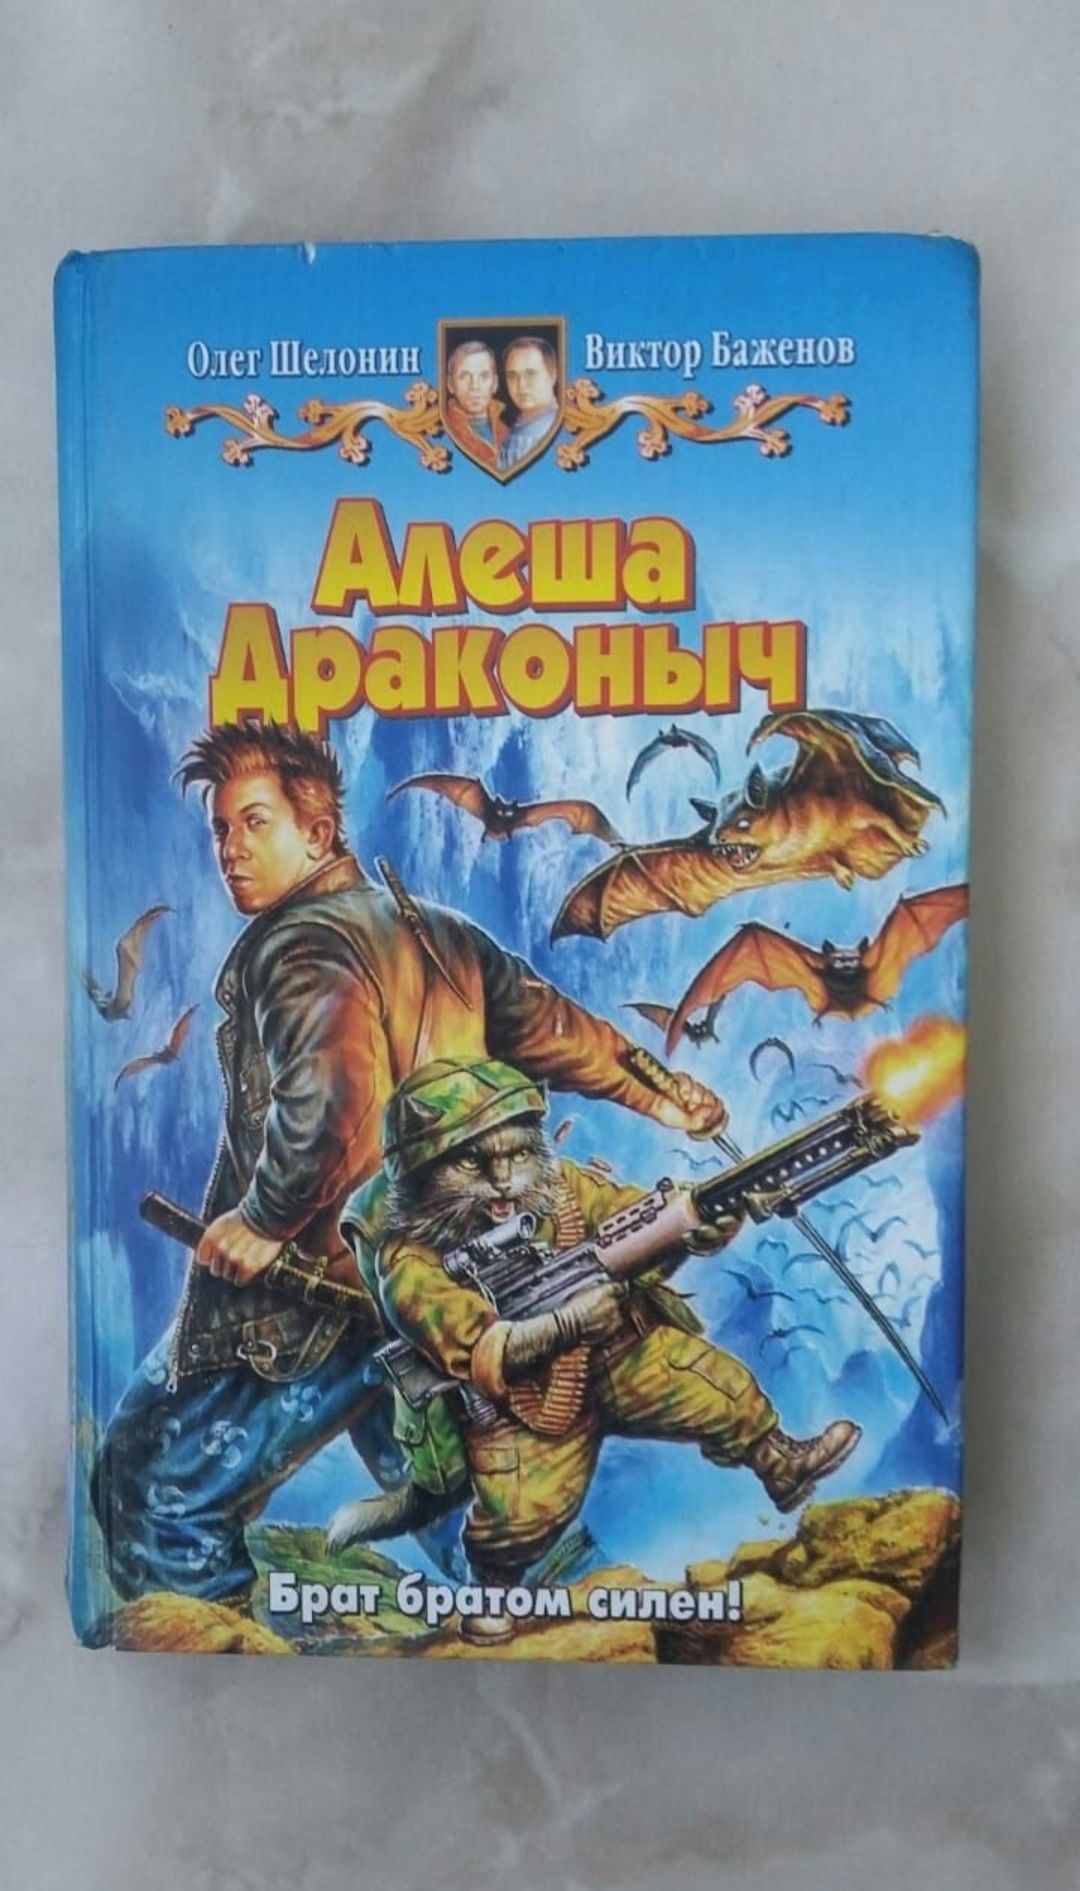 Книга з гумором "Альоша драконич"